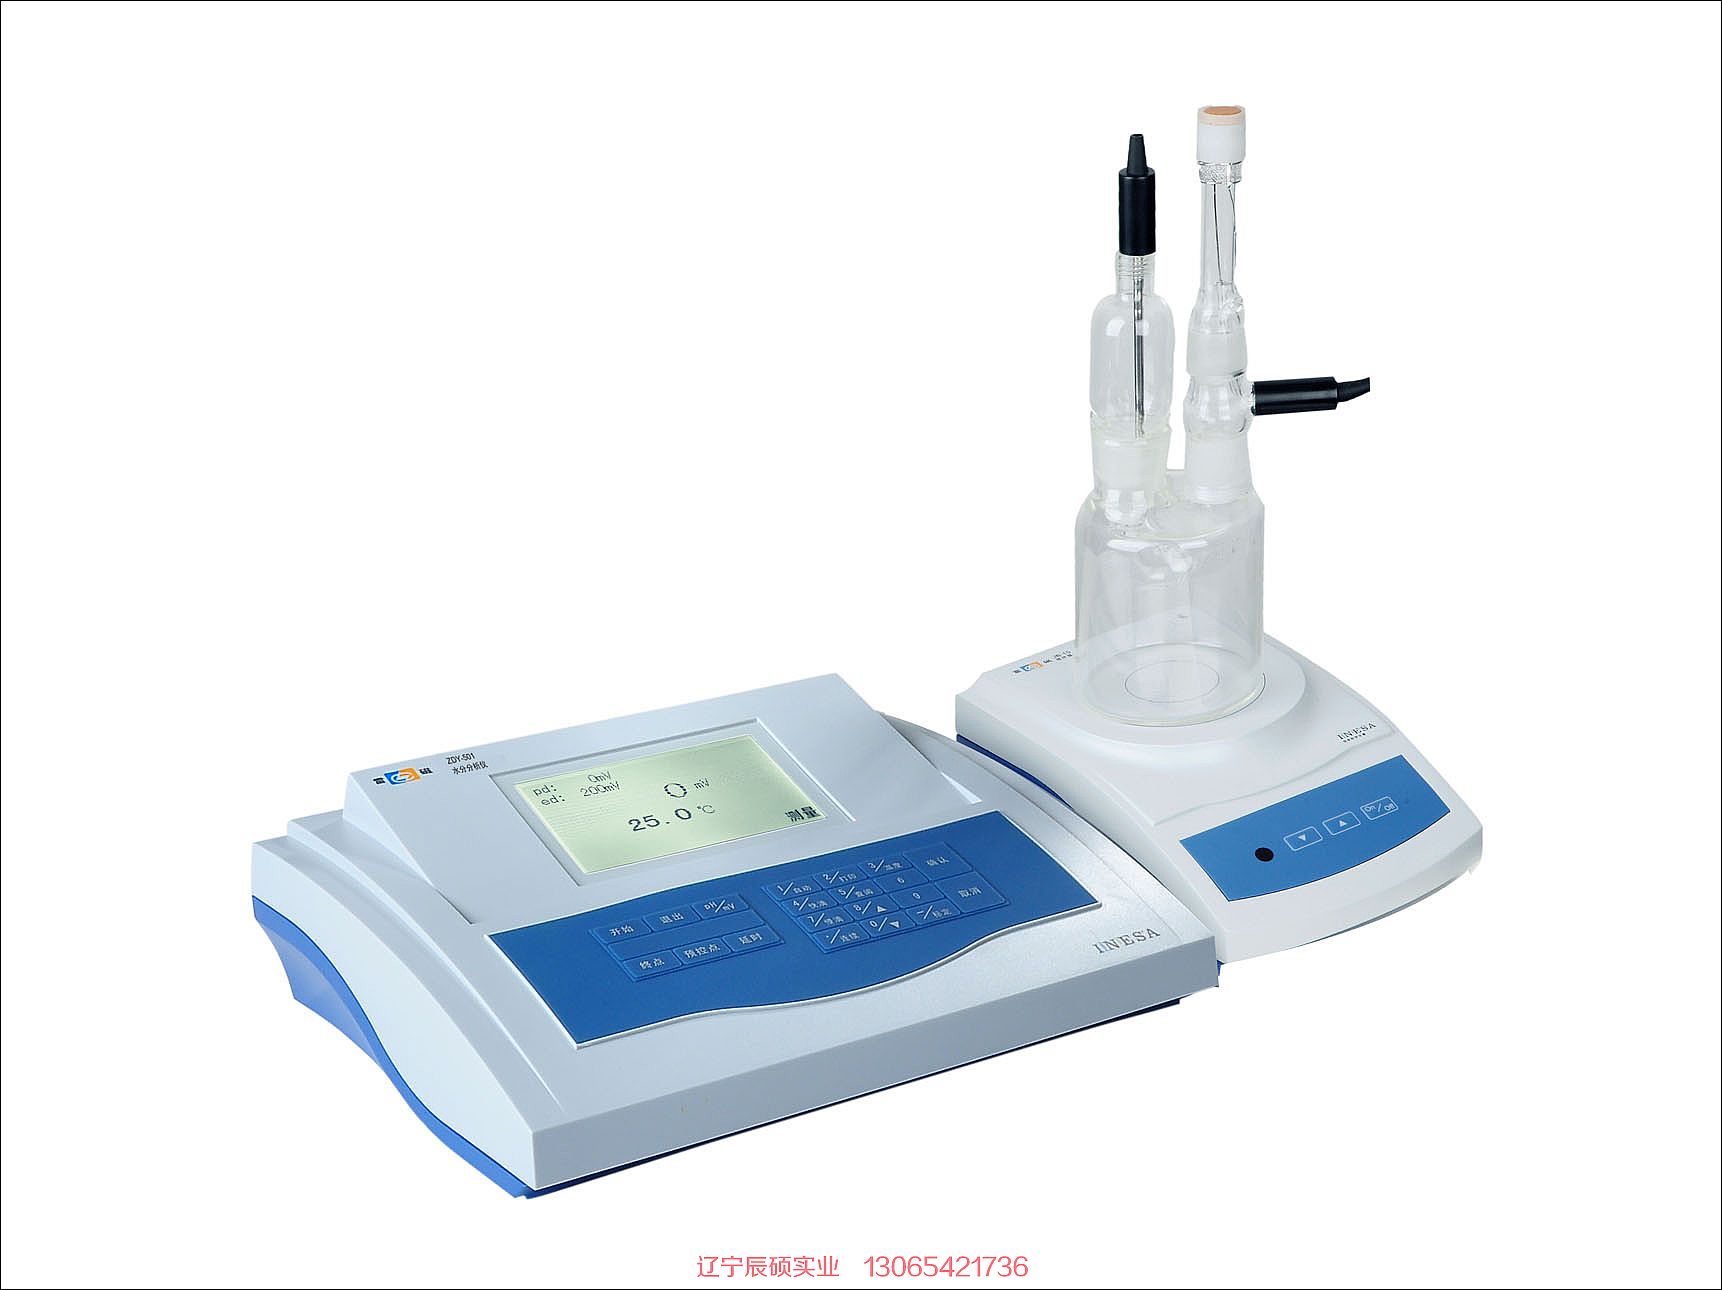 雷磁ZDY-501型水分分析仪